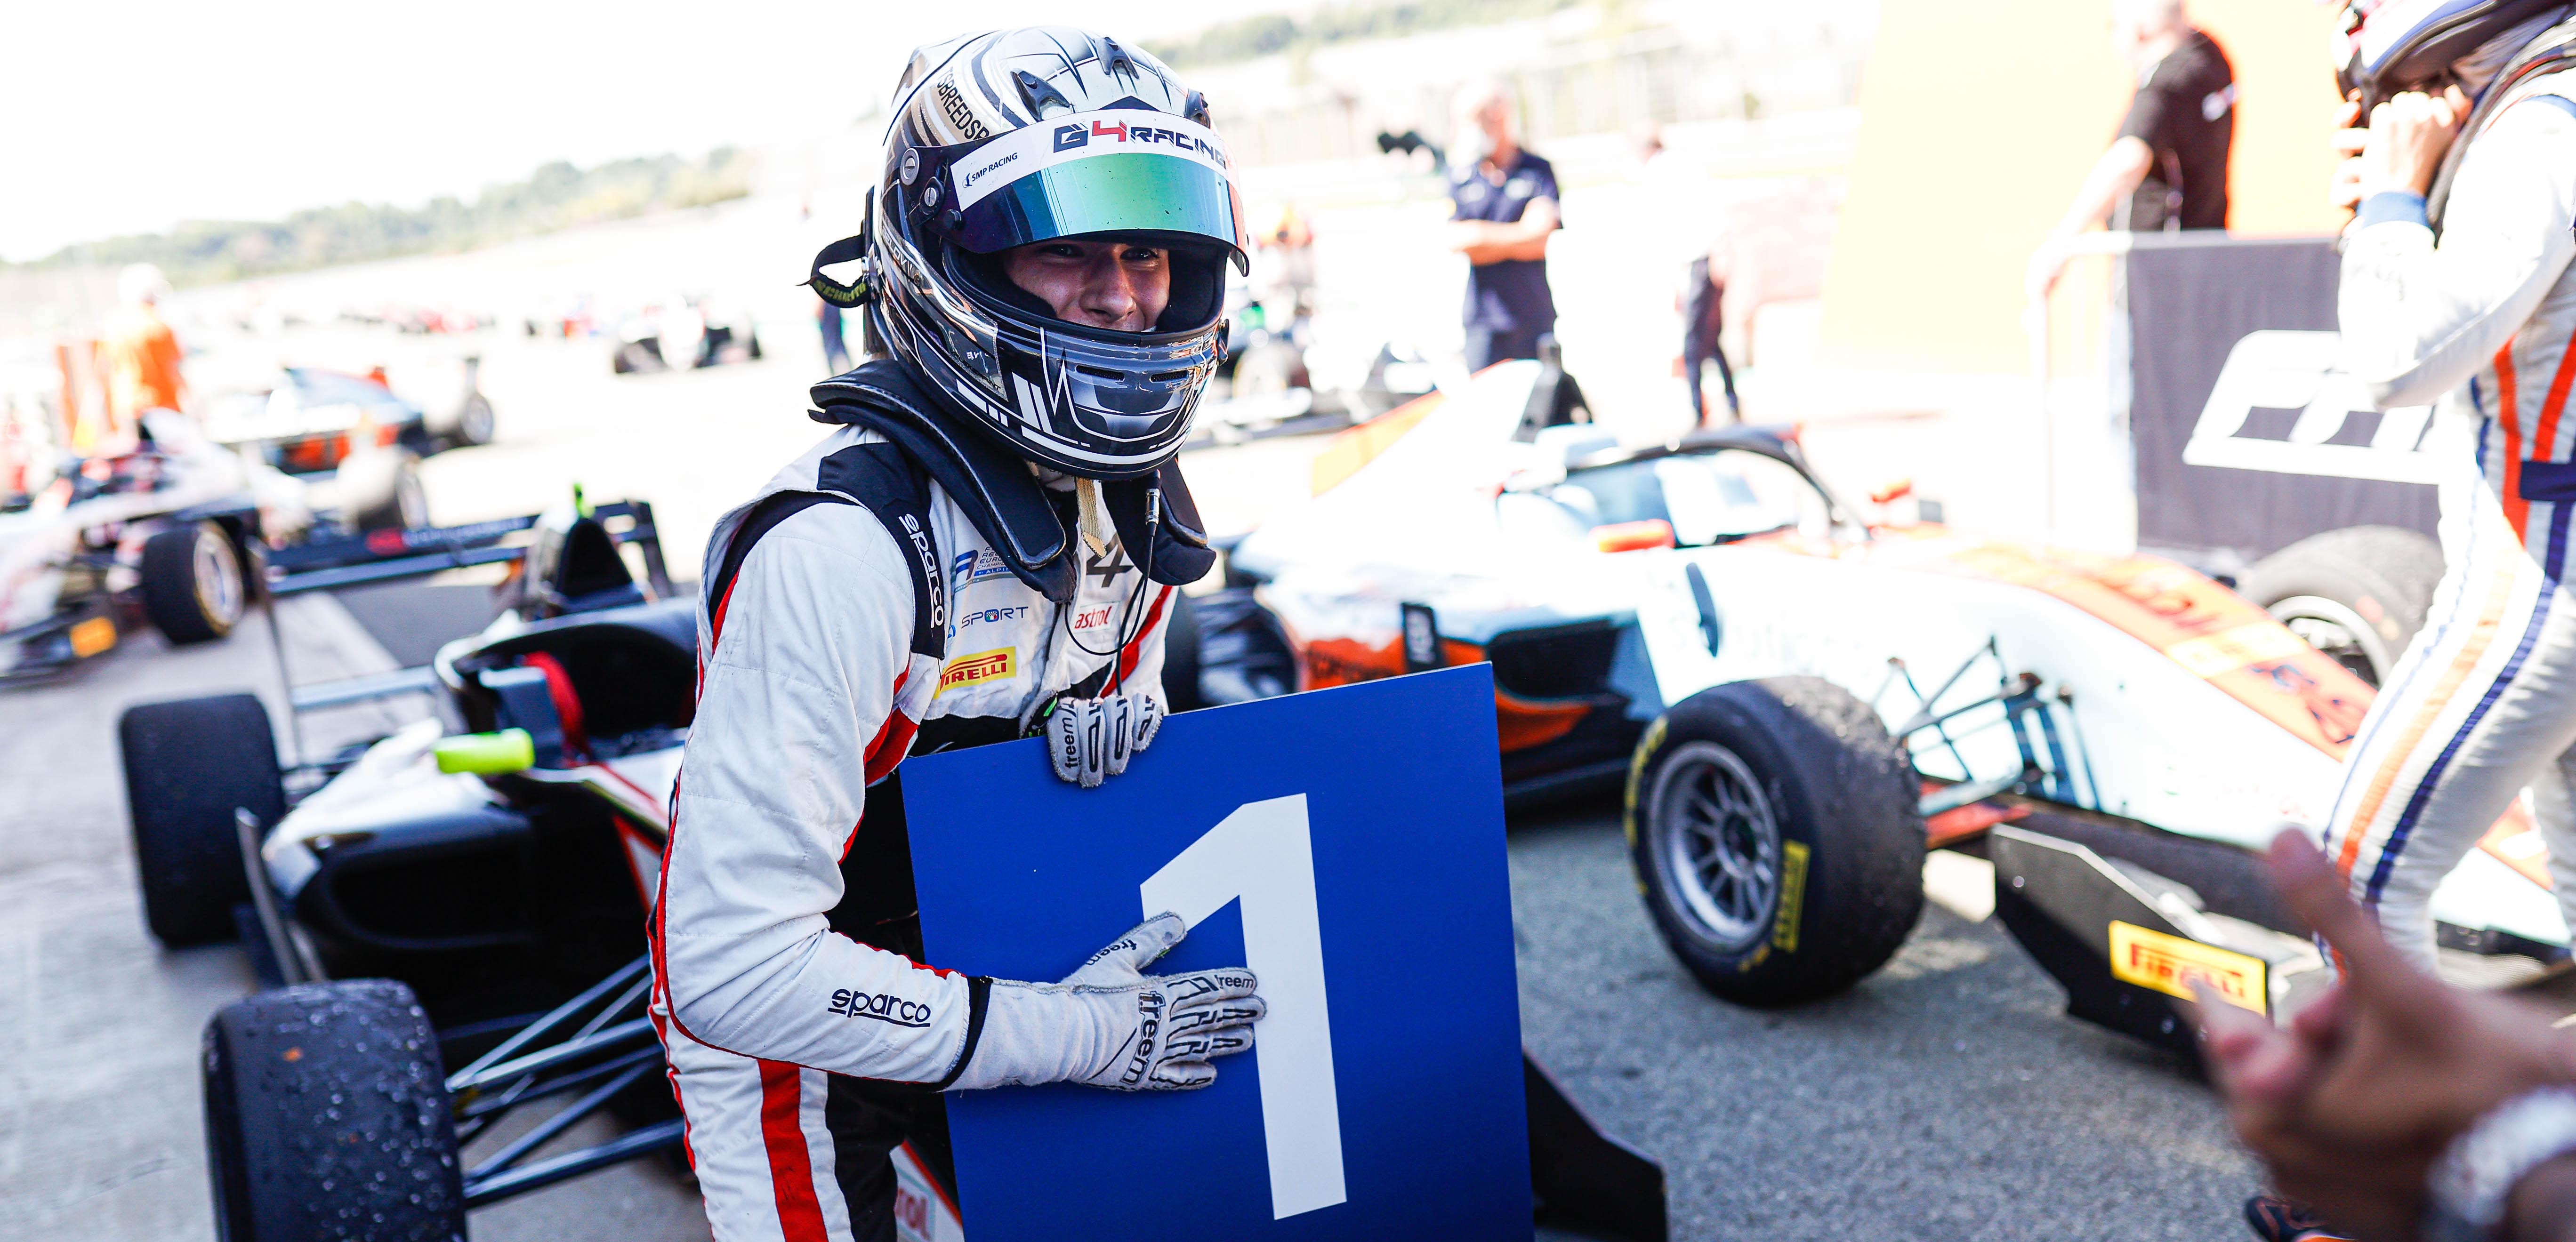 Intervista a Michael Belov<br />“A Monza per vincere ancora con G4”